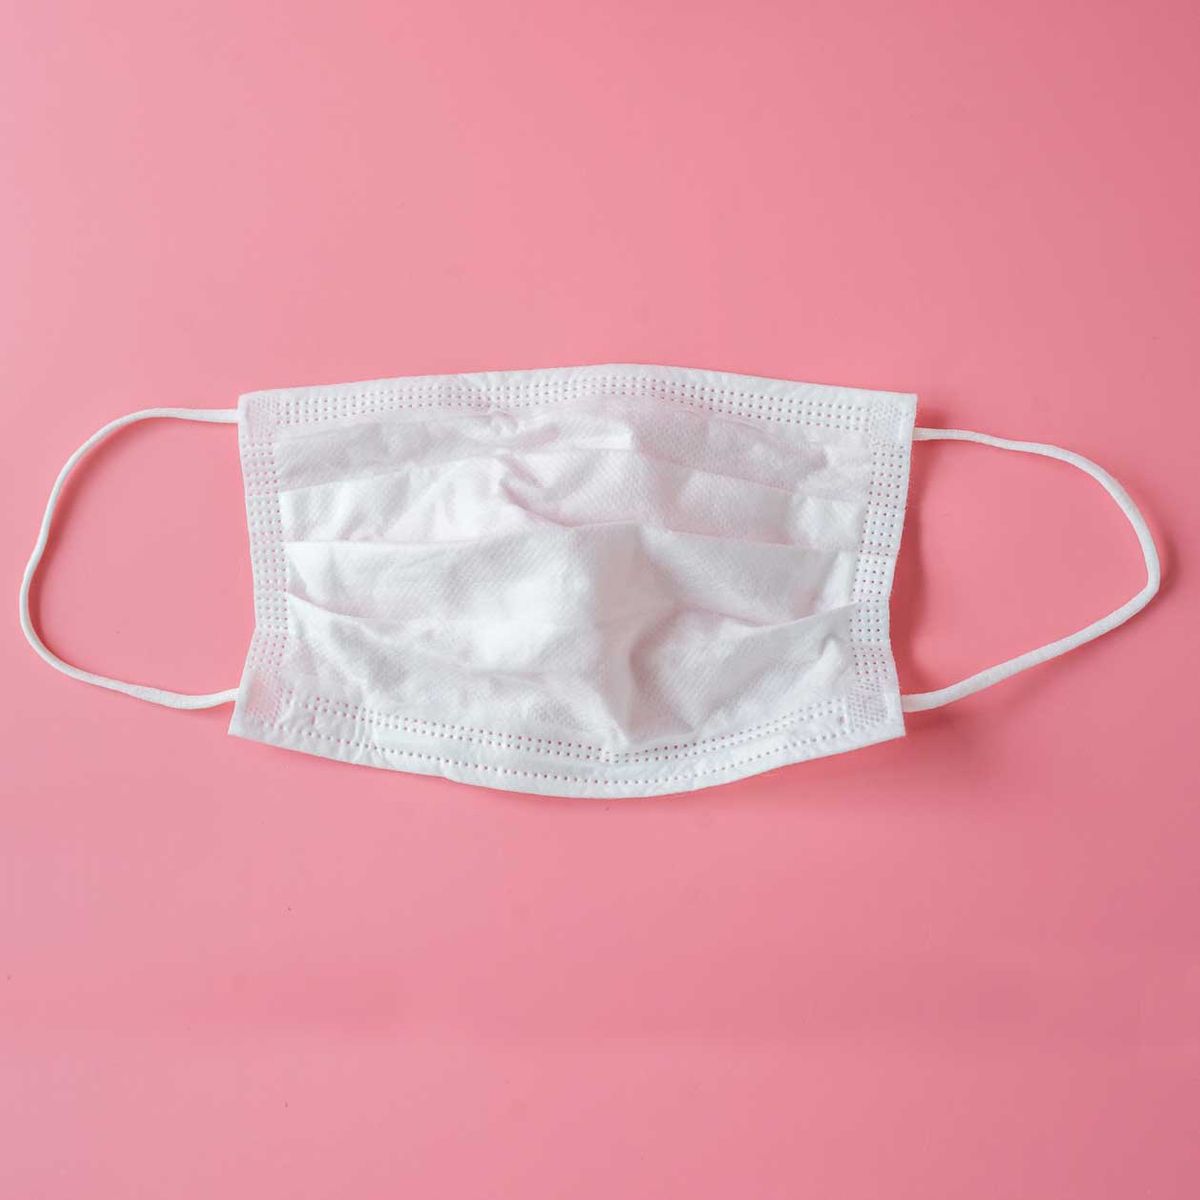 Ist es sinnvoll Mundschutzmasken selbst zu basteln?